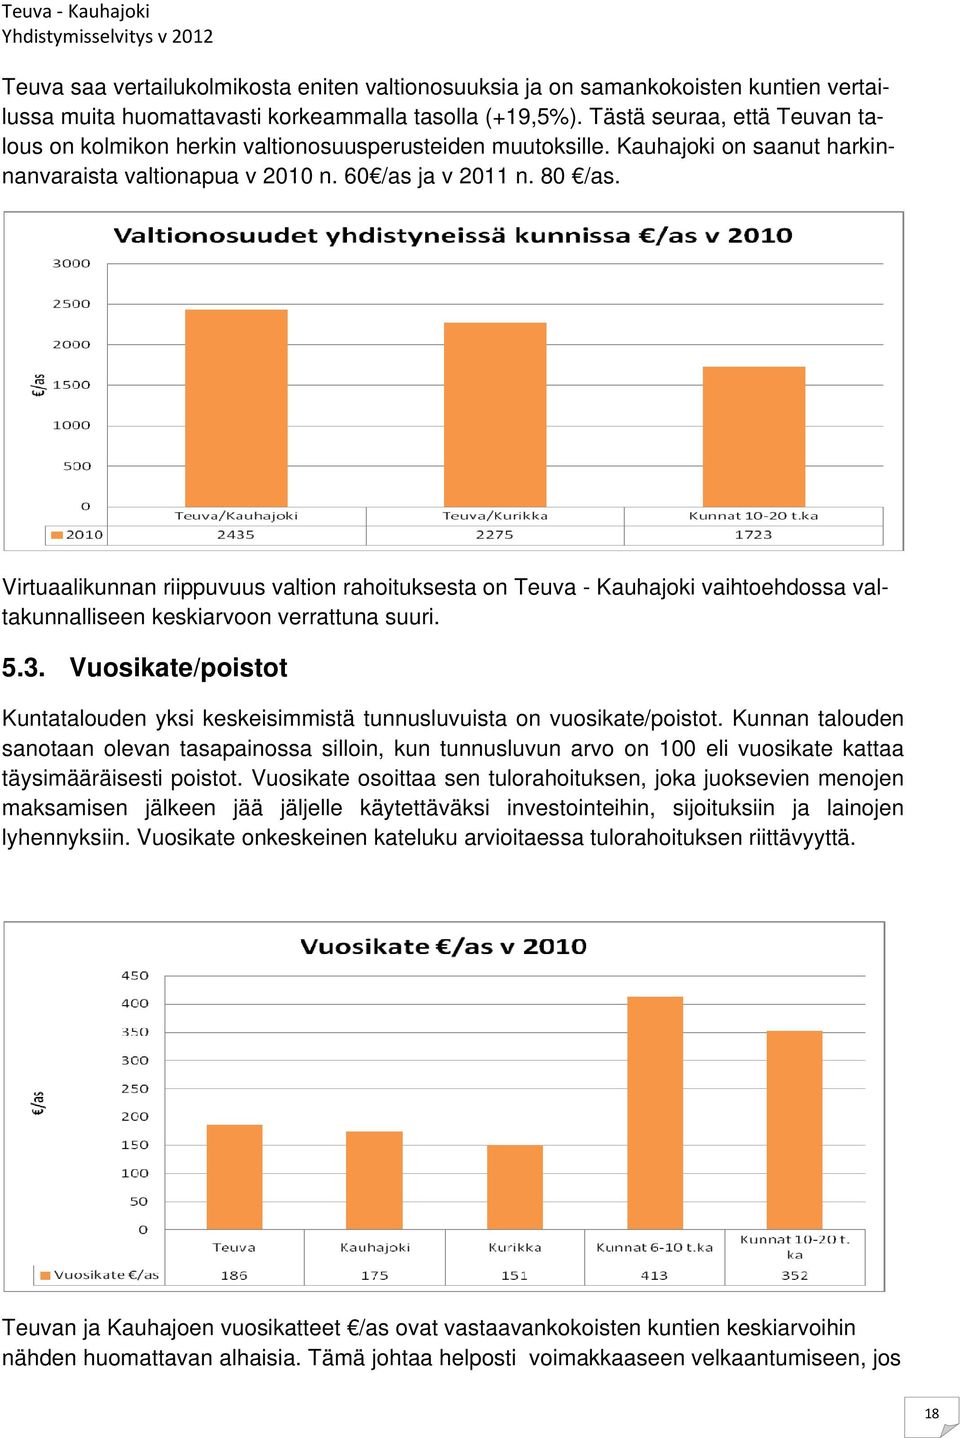 Virtuaalikunnan riippuvuus valtion rahoituksesta on Teuva - Kauhajoki vaihtoehdossa valtakunnalliseen keskiarvoon verrattuna suuri. 5.3.